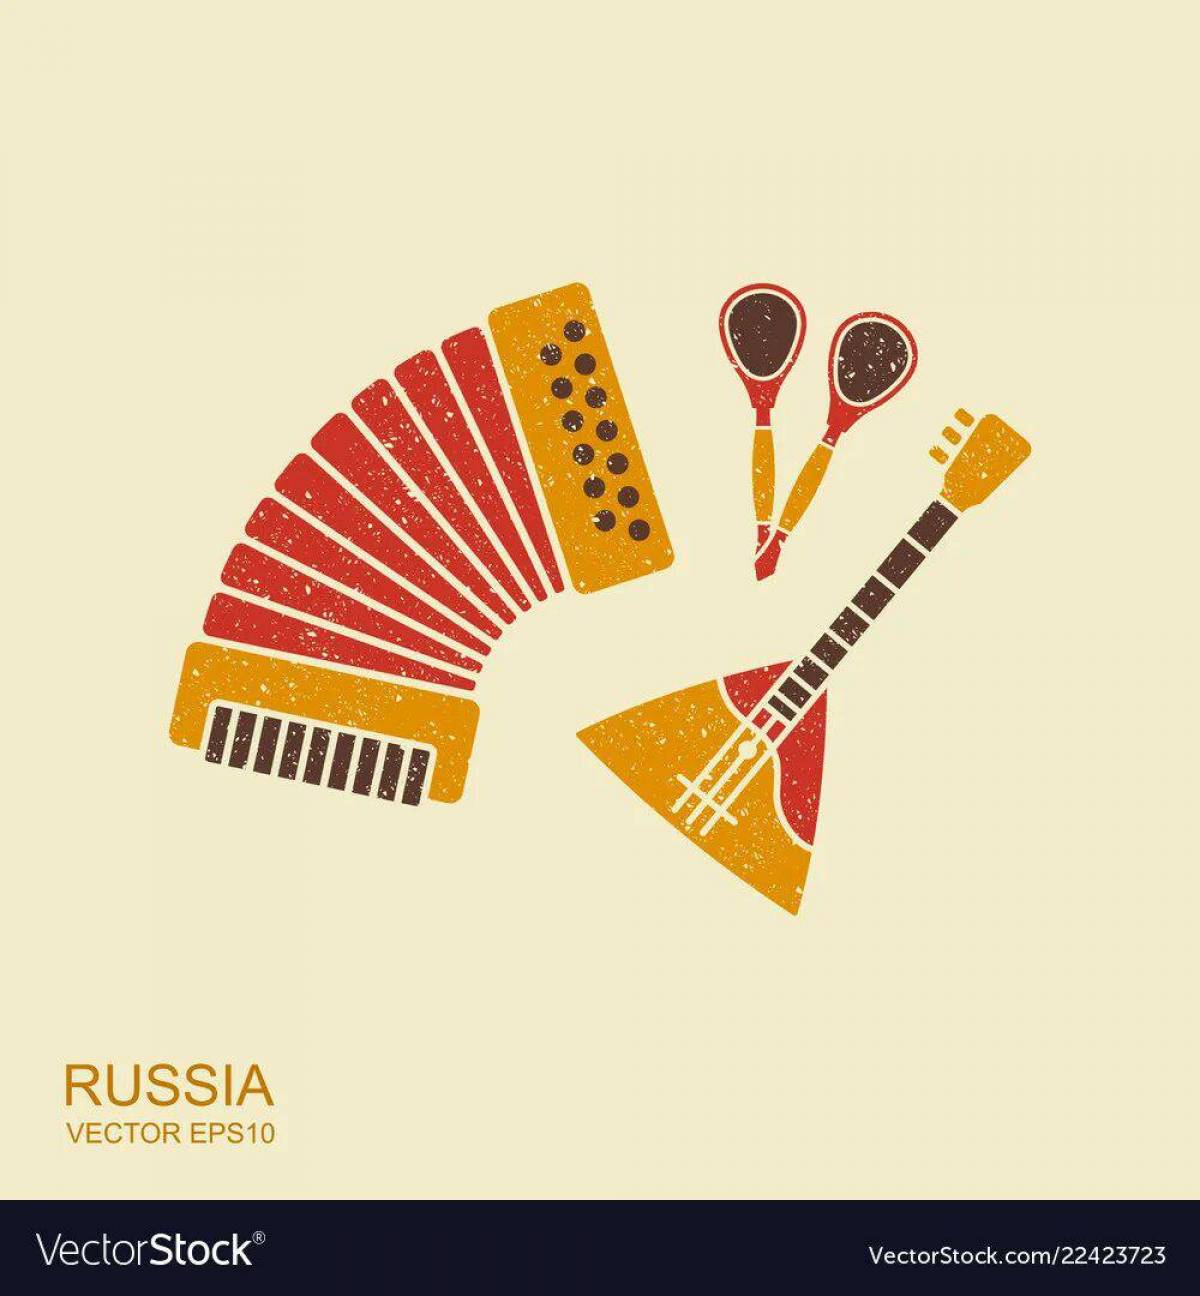 Русские народные инструменты для детей с названиями #9